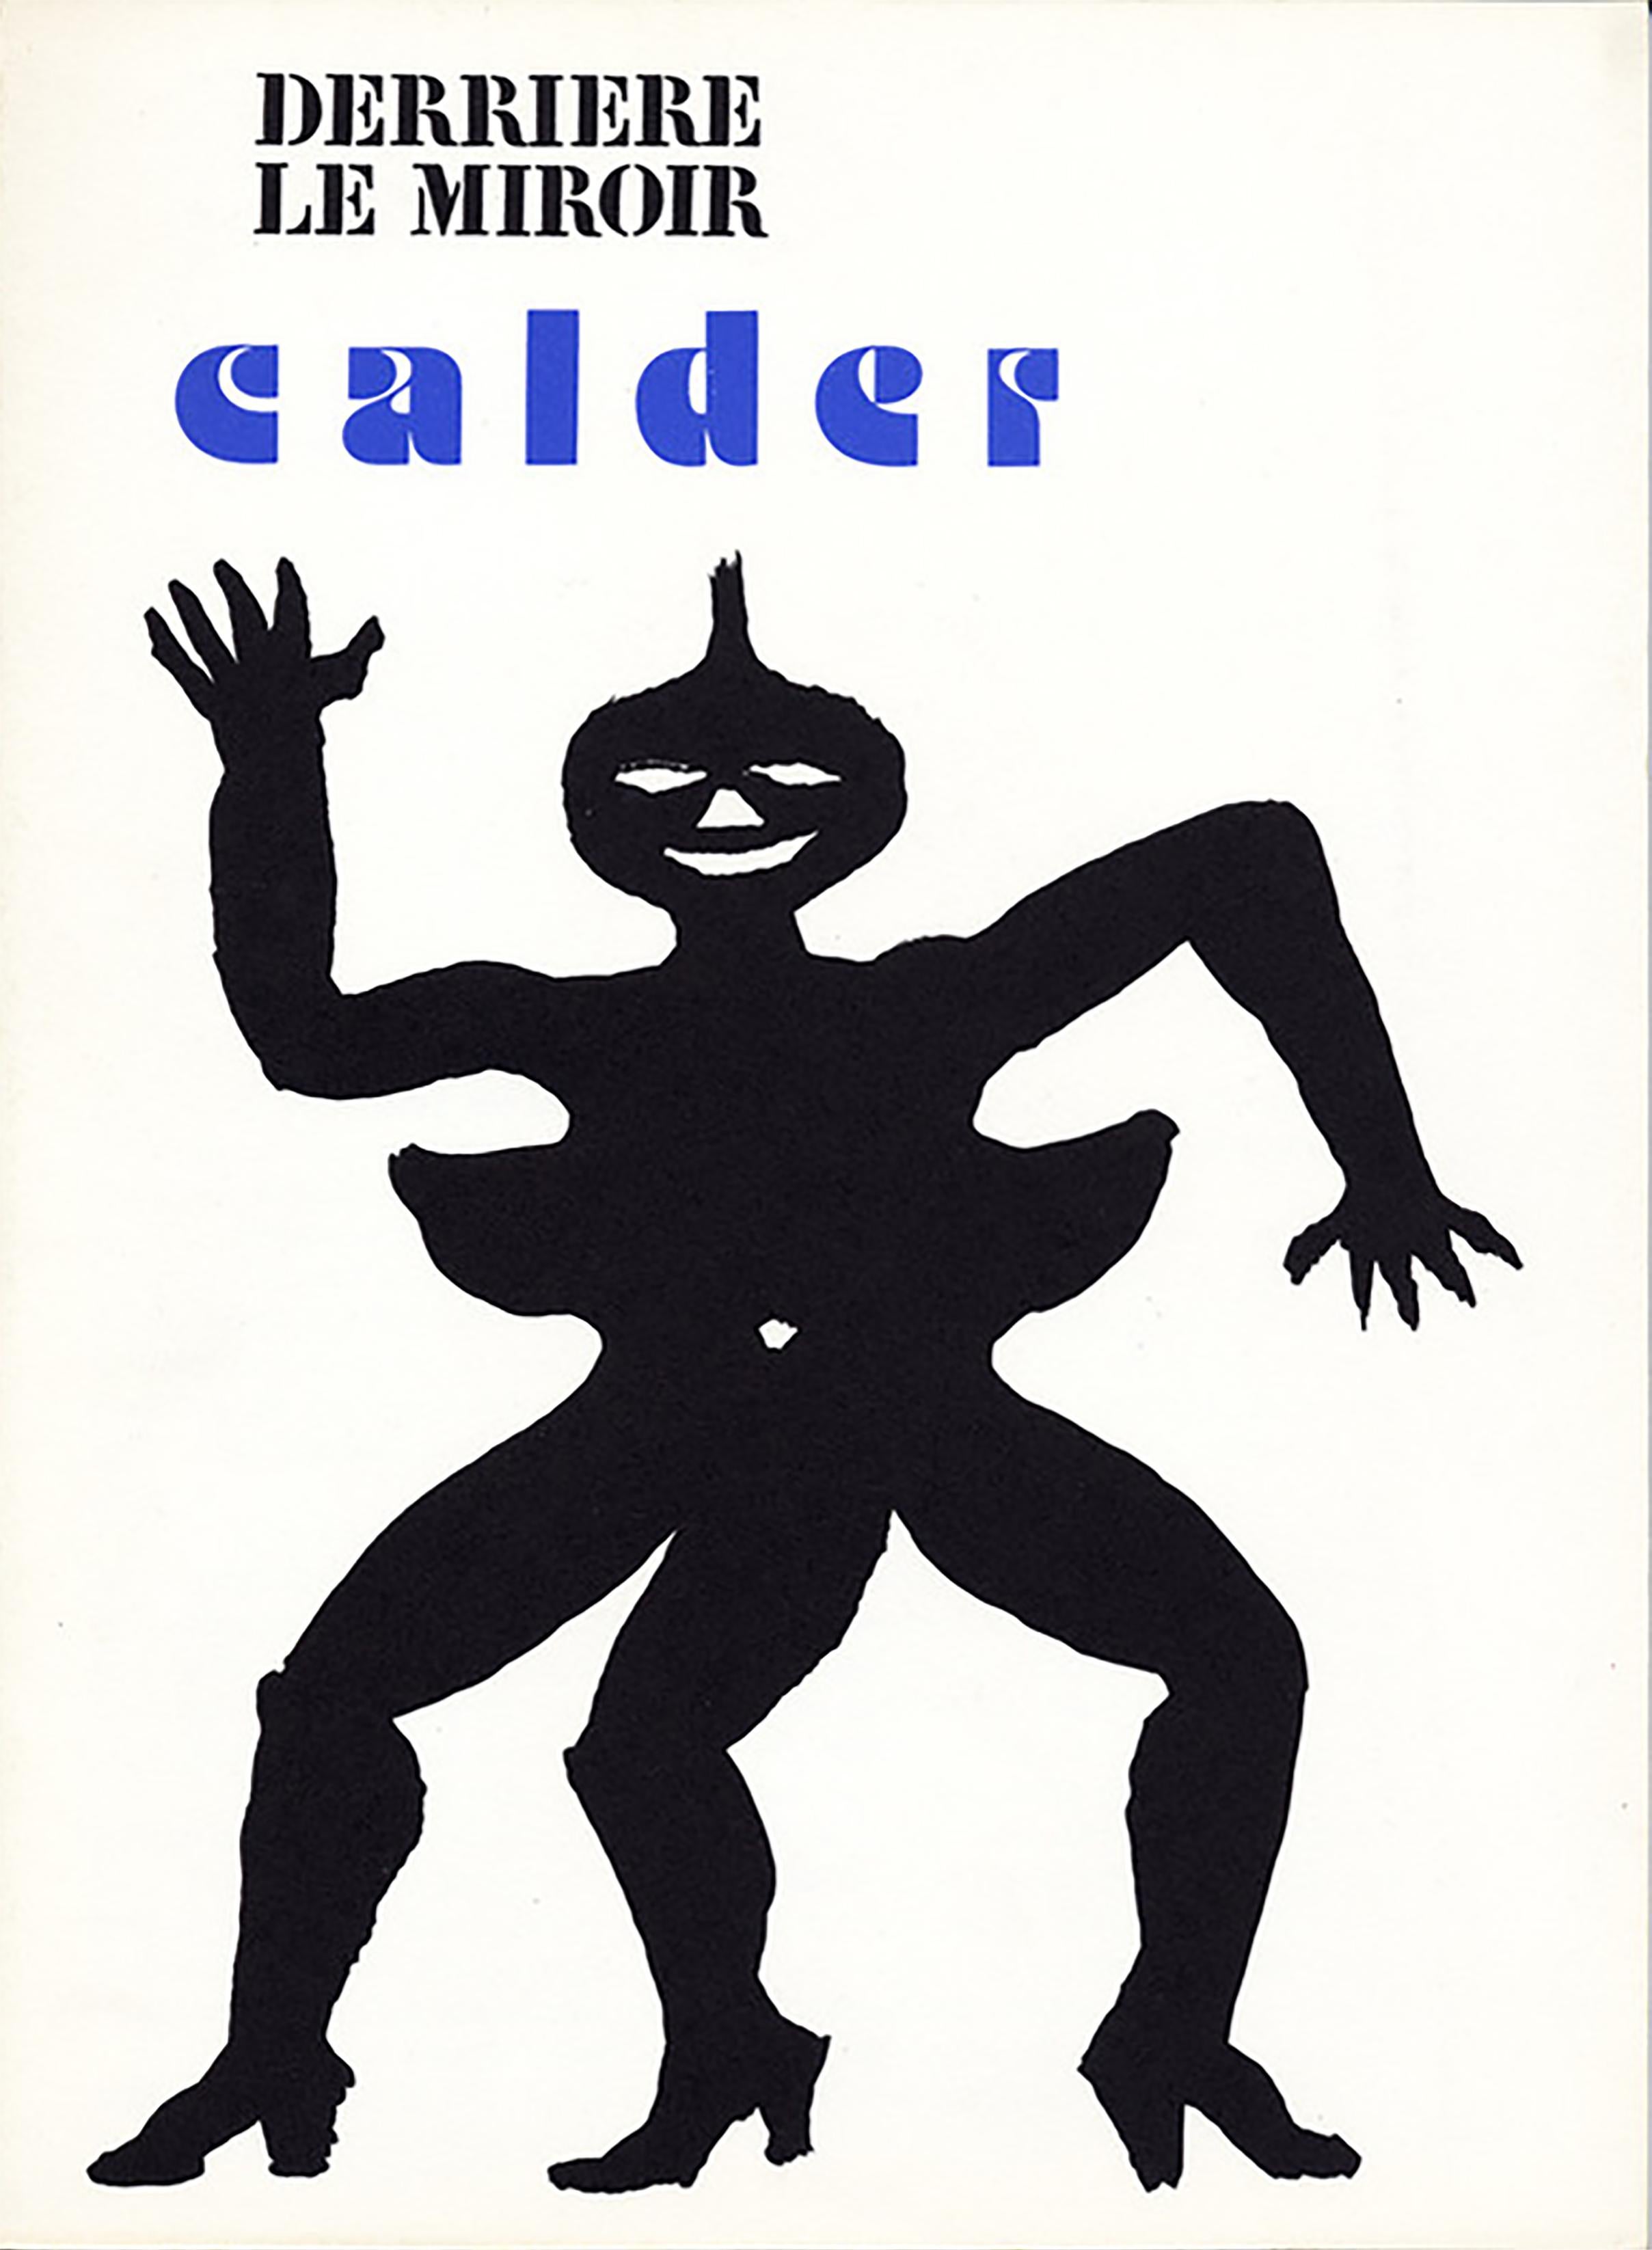 Cover (Derriere le Miroir # 212) - Print by Alexander Calder